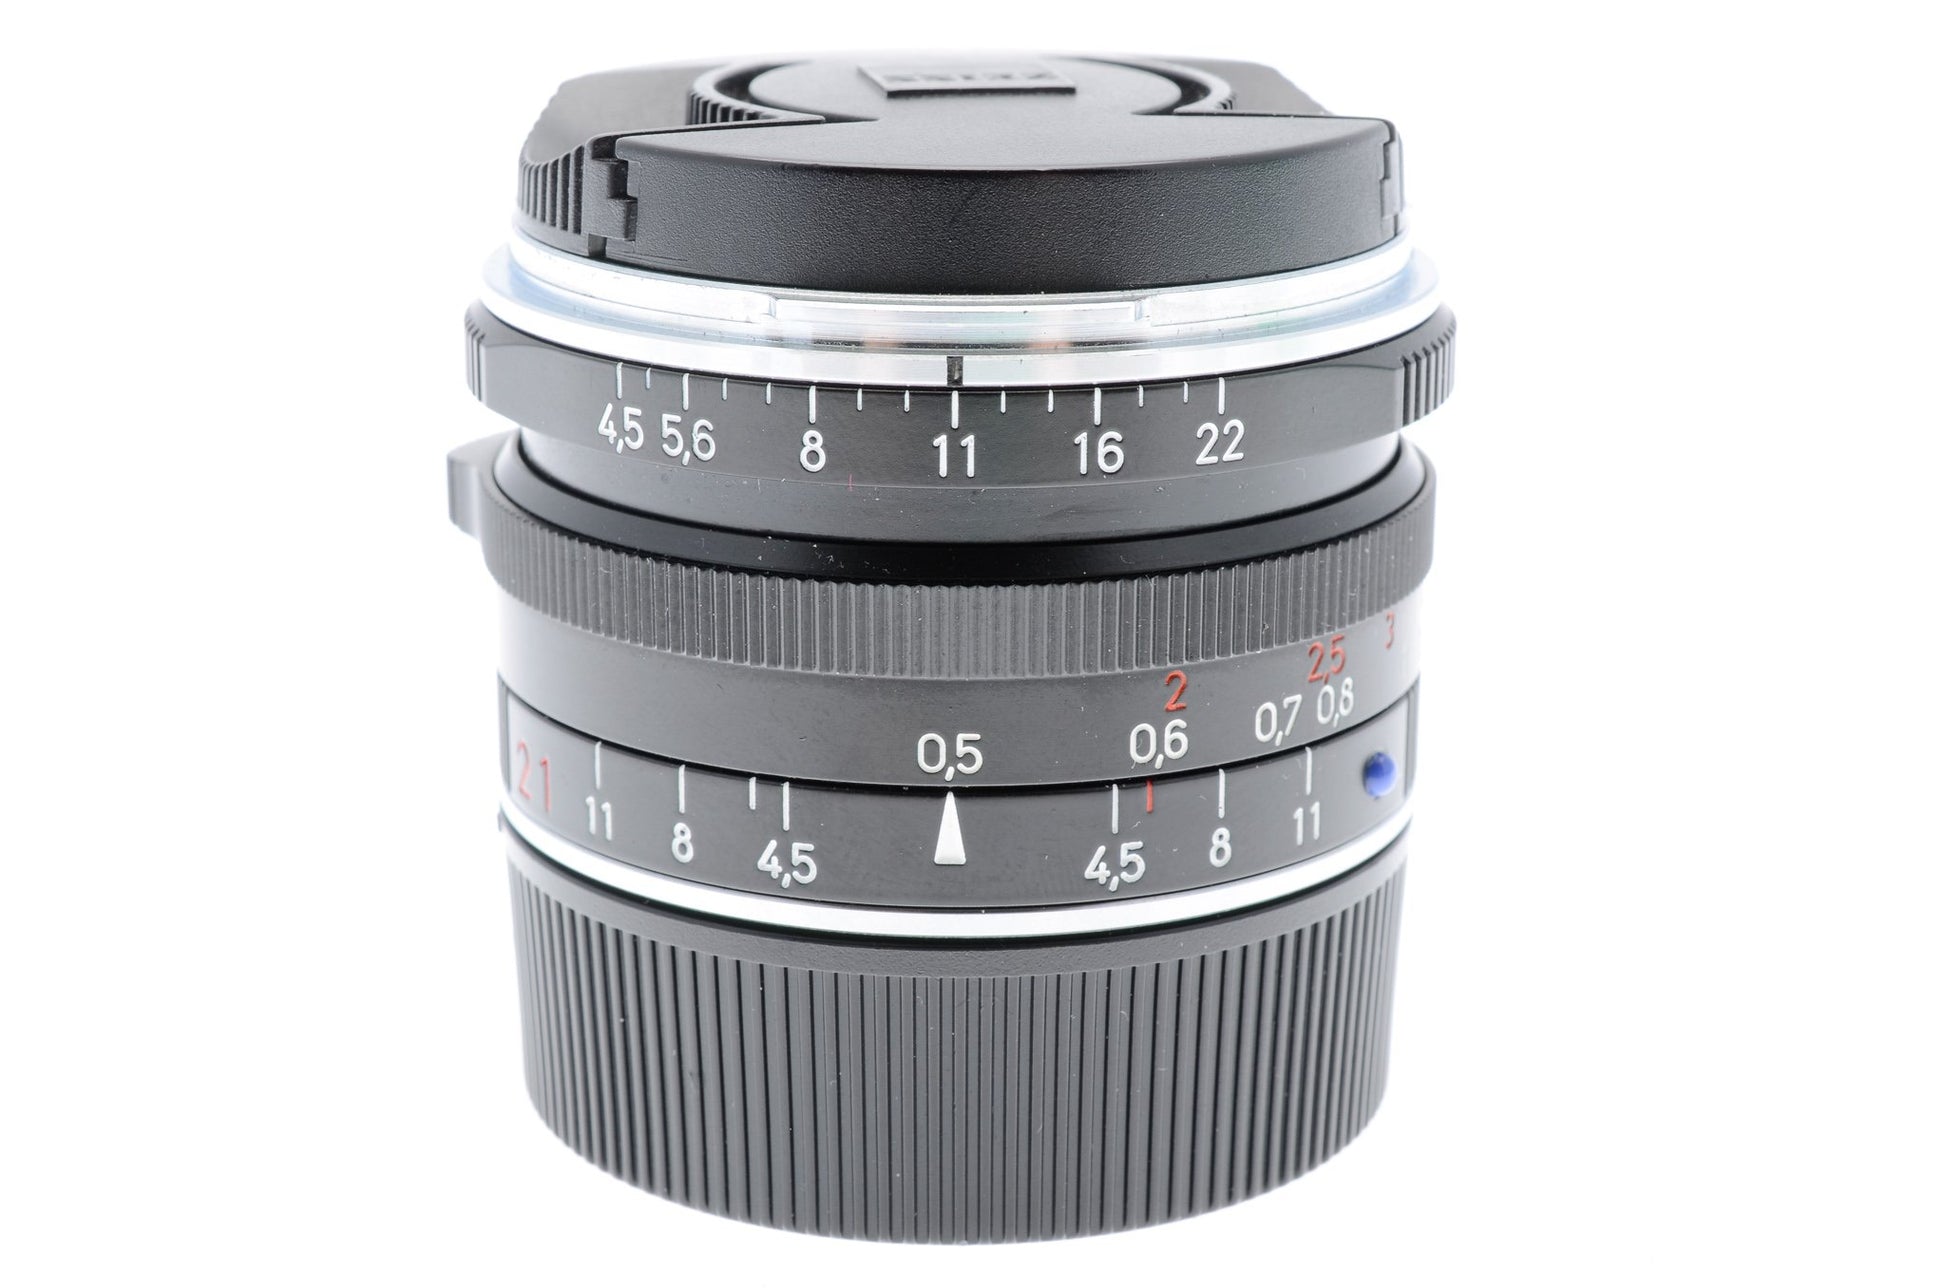 Carl Zeiss 21mm f4.5 C Biogon T* ZM - Lens